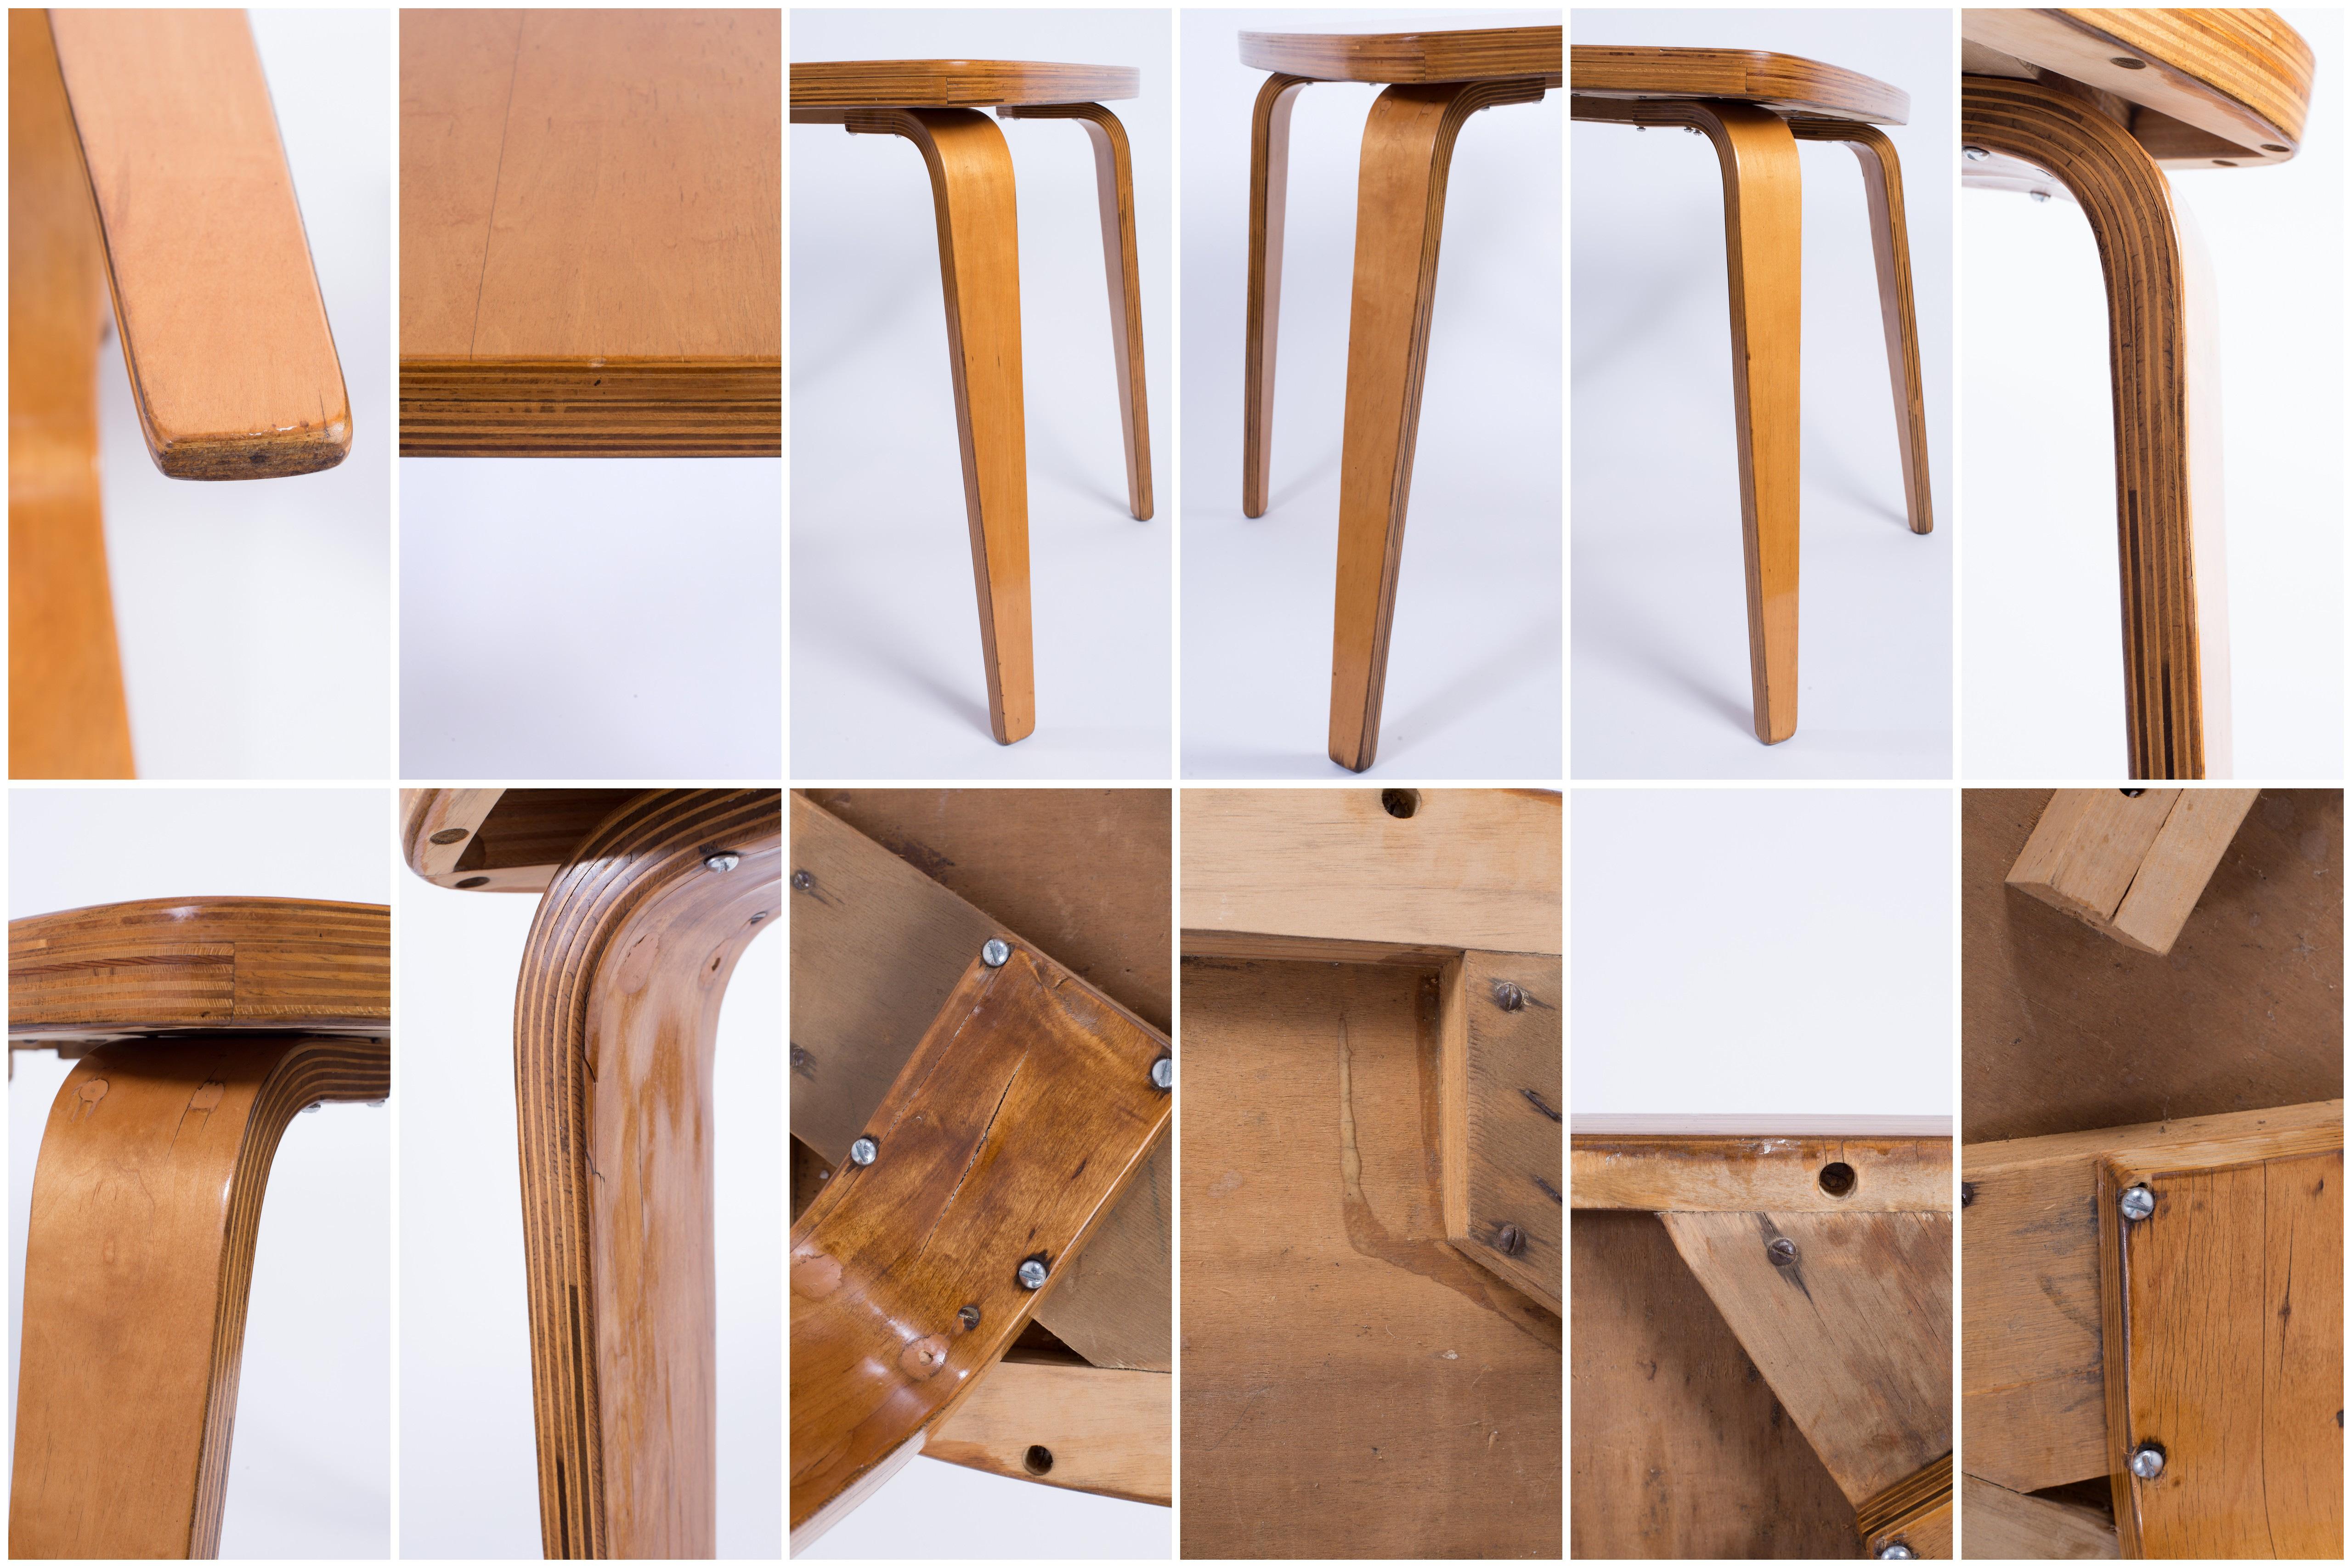 Thaden-Jordan 1940’s Herbert Von Thaden Mid-Century Modern Table/Chairs 5pc Set For Sale 3